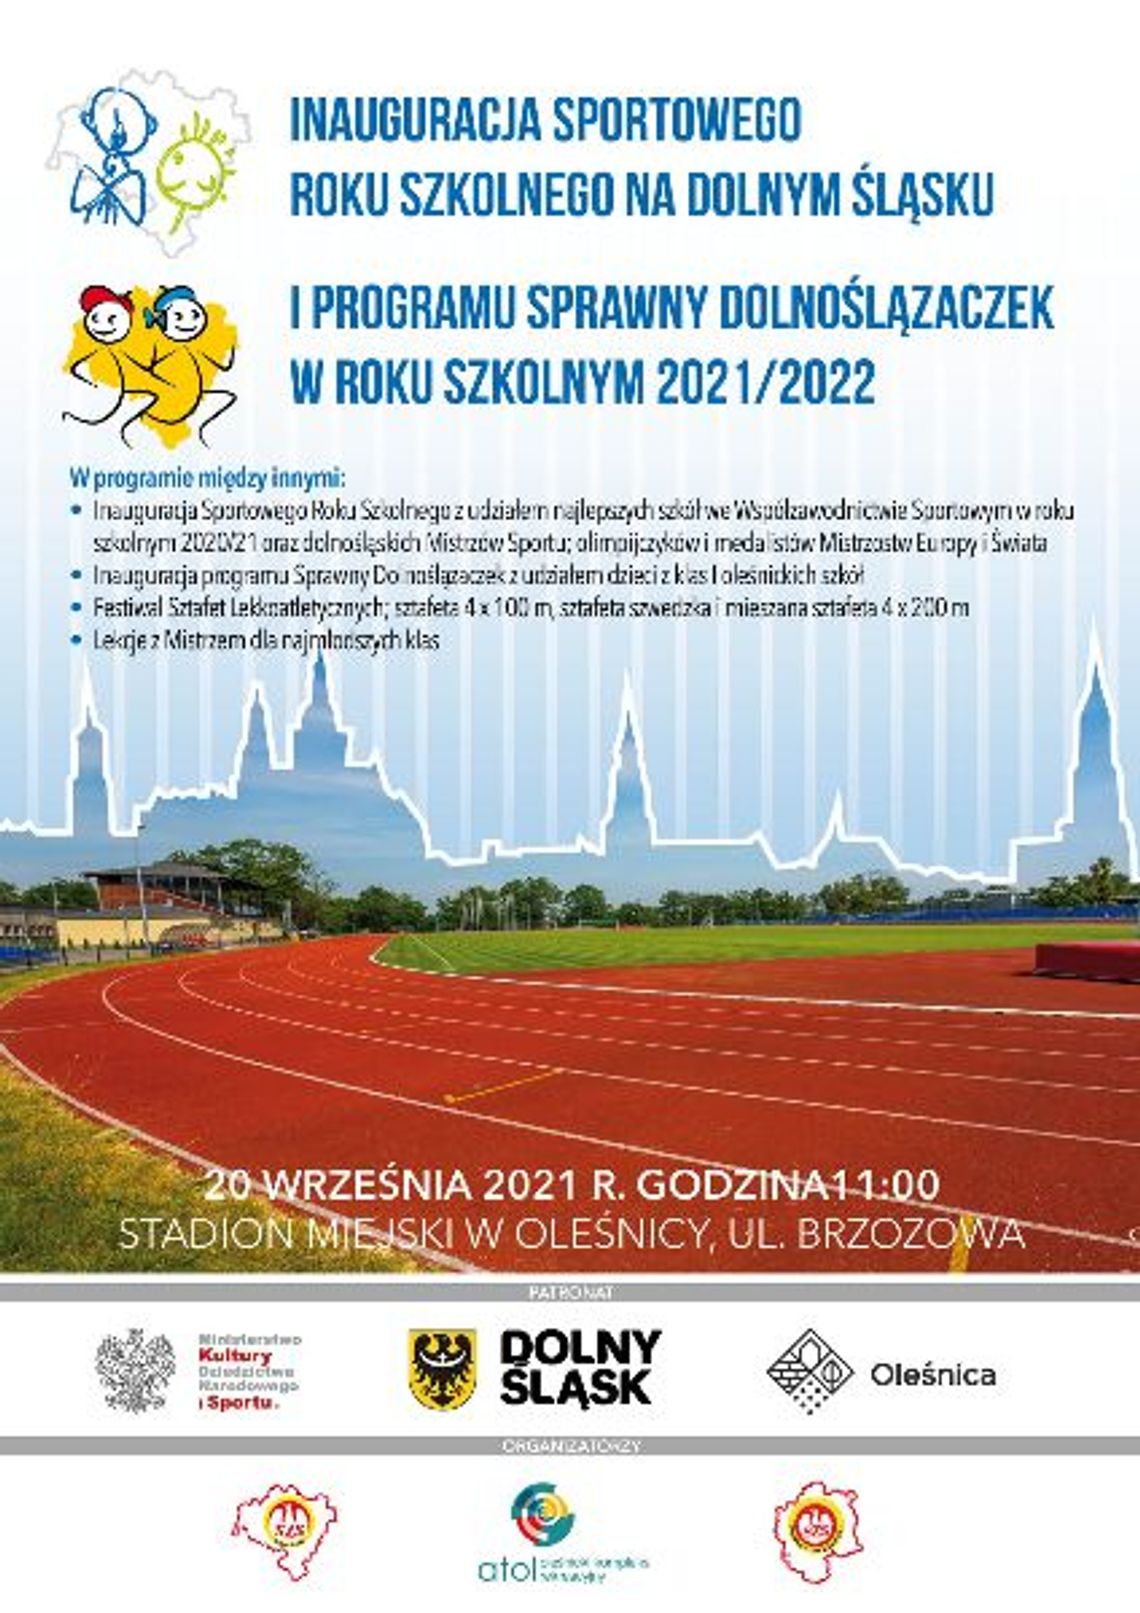 Inauguracja sportowego roku szkolnego na Dolnym Śląsku i programu Sprawny Dolnoślązaczek w roku szkolnym 2021/2022